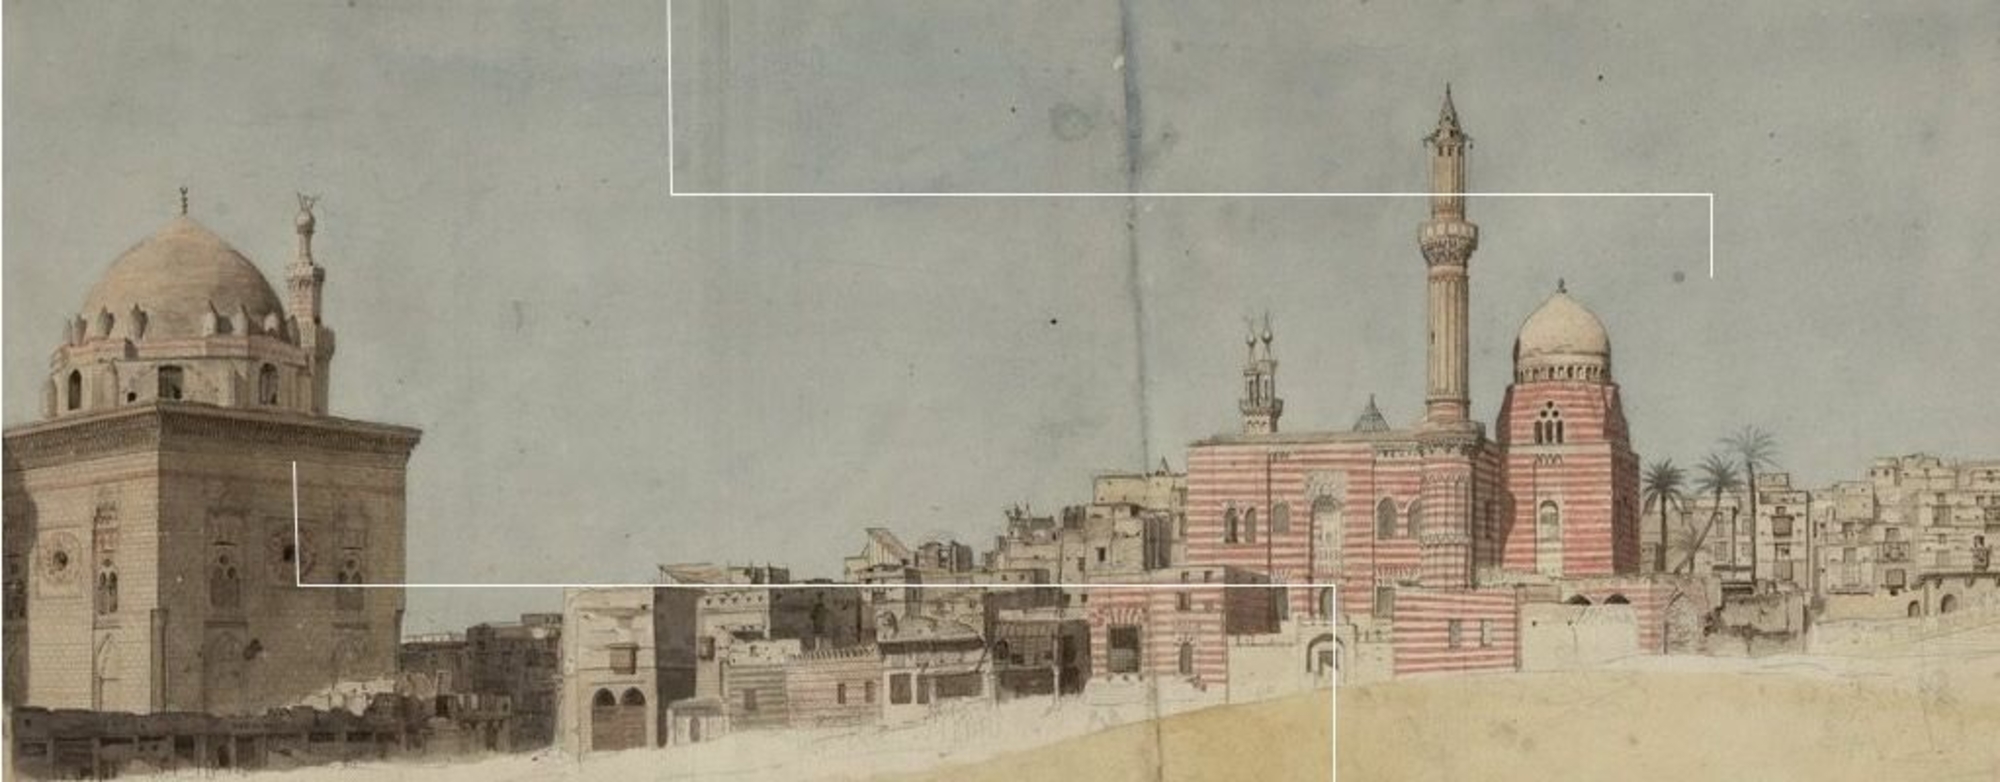 Le Caire, vue de la Mosquée du sultan Hassan. Dessin par Nicolas-Jacques Conté (1755-1805). BnF, dép. Estampes et photographie